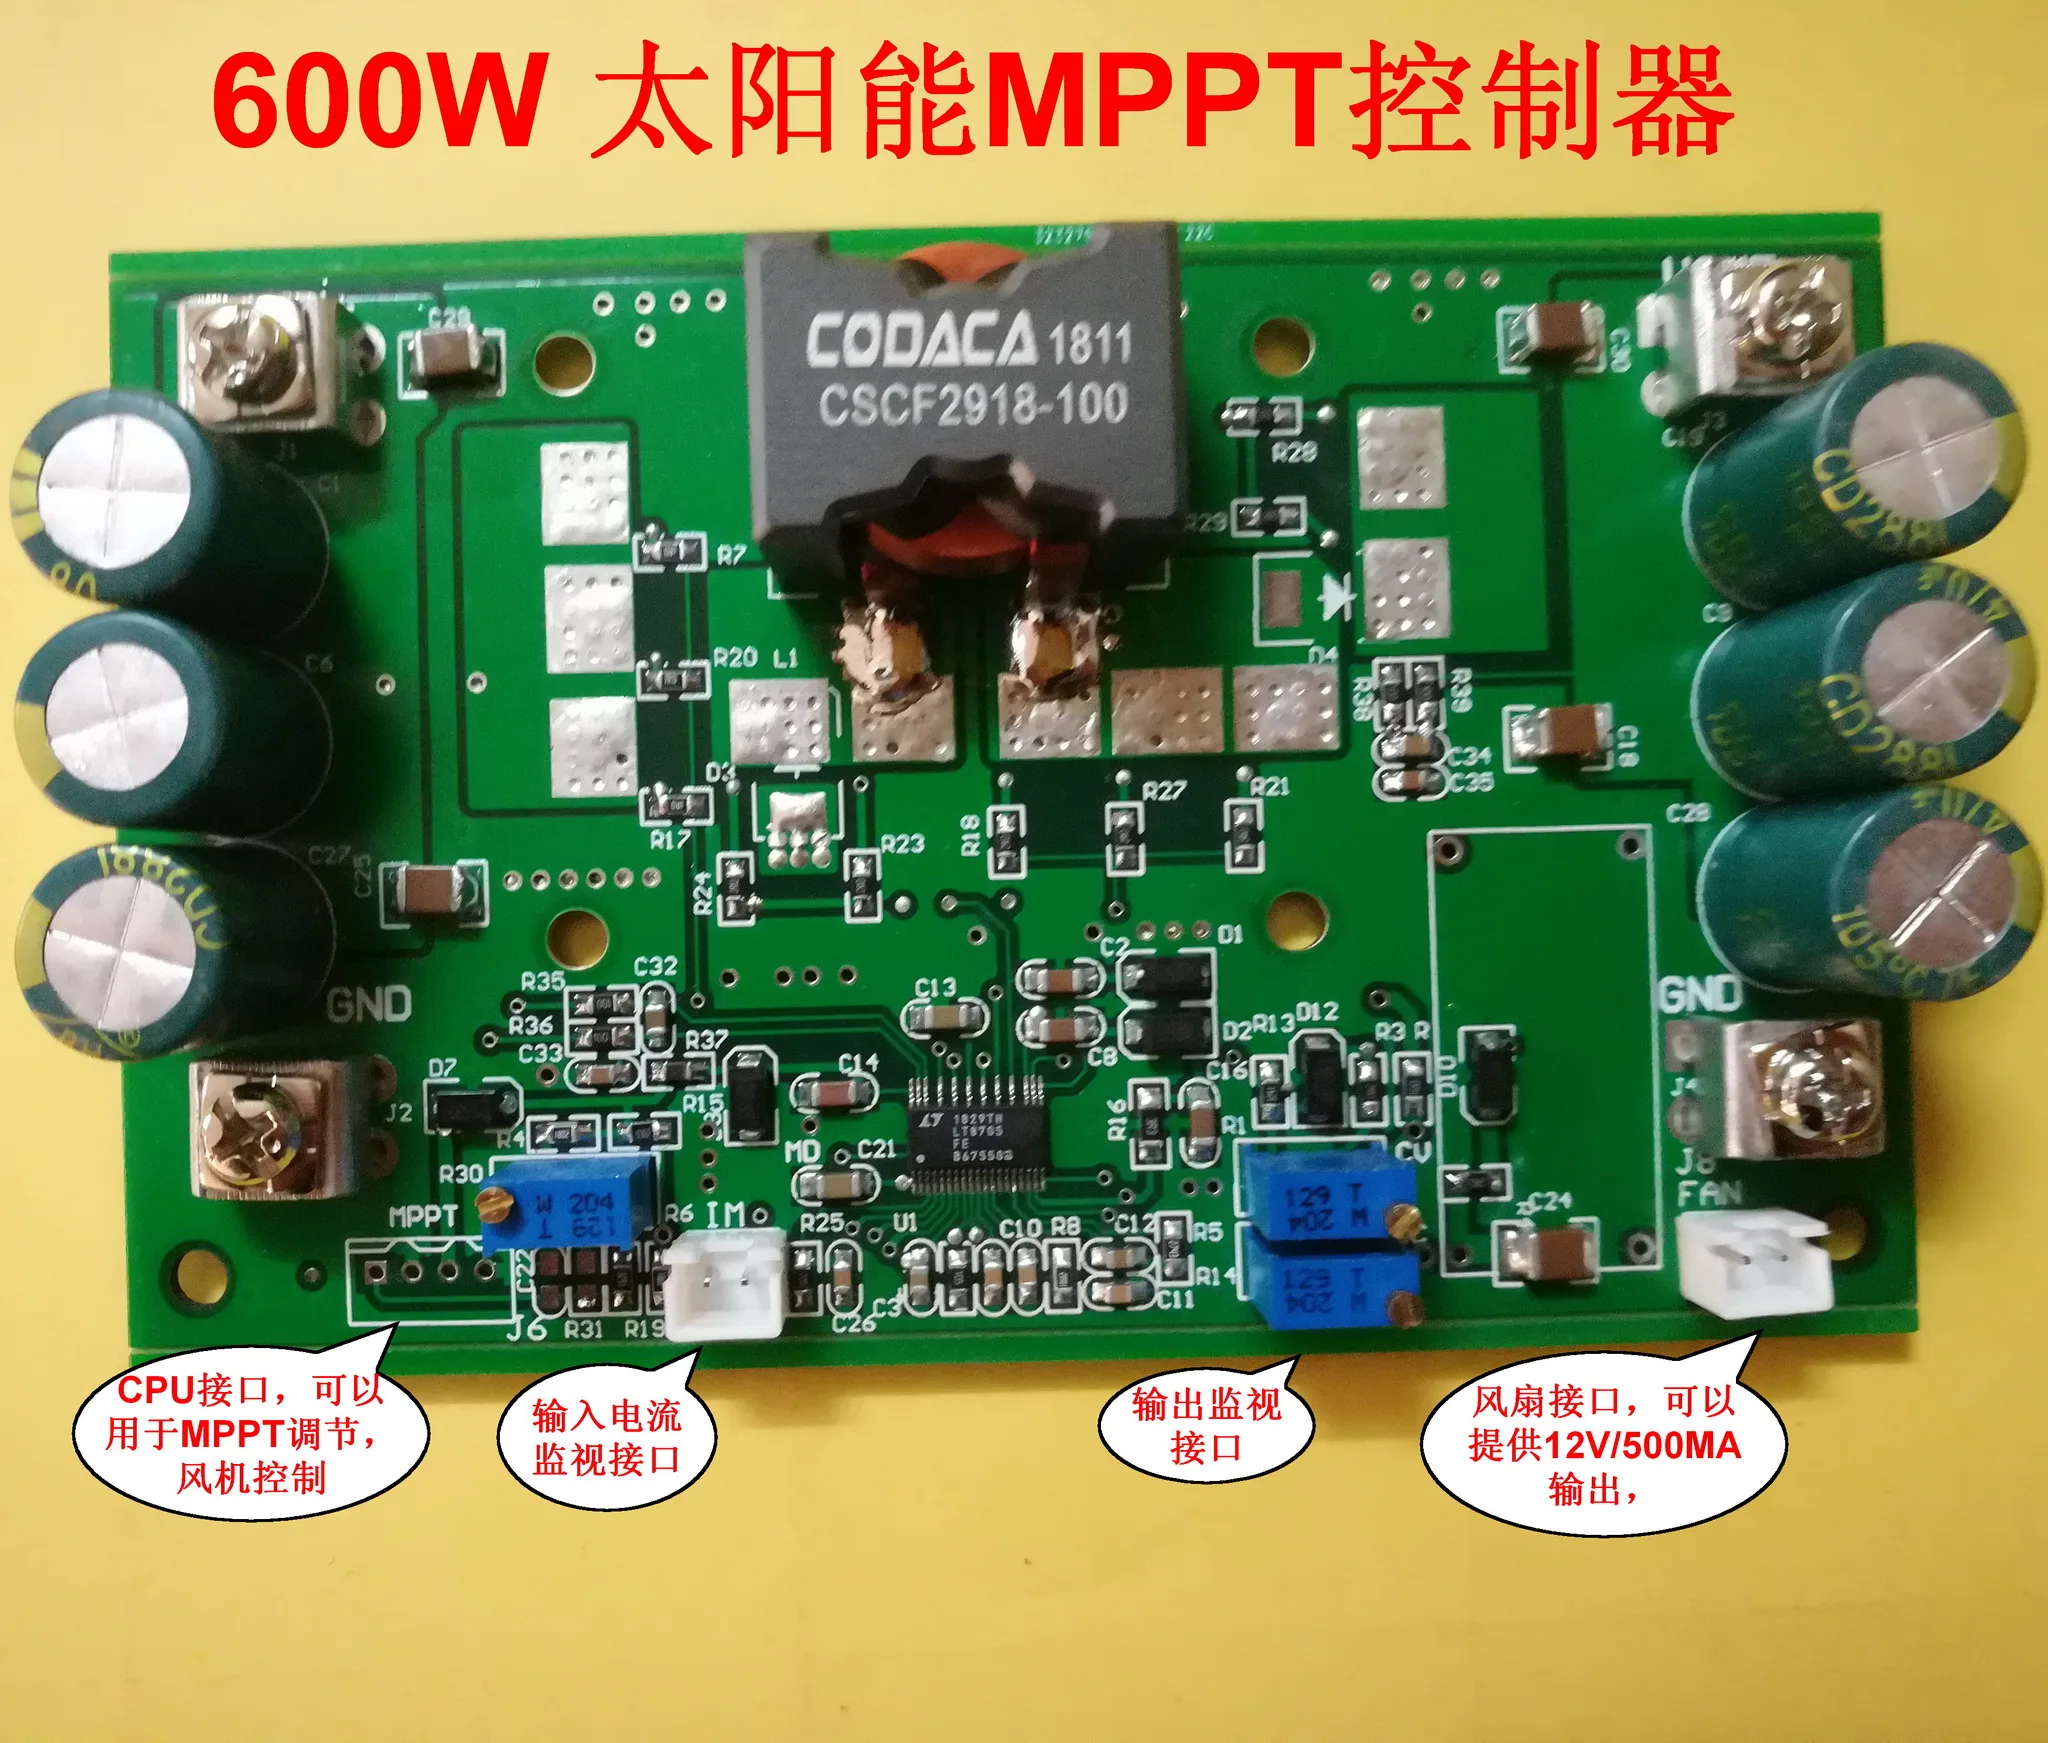 600W Päikese MPPT CC-CV Laadimine 2.8-80V LT8705 Automaatne Buck-boost, LED Konstantse voolu